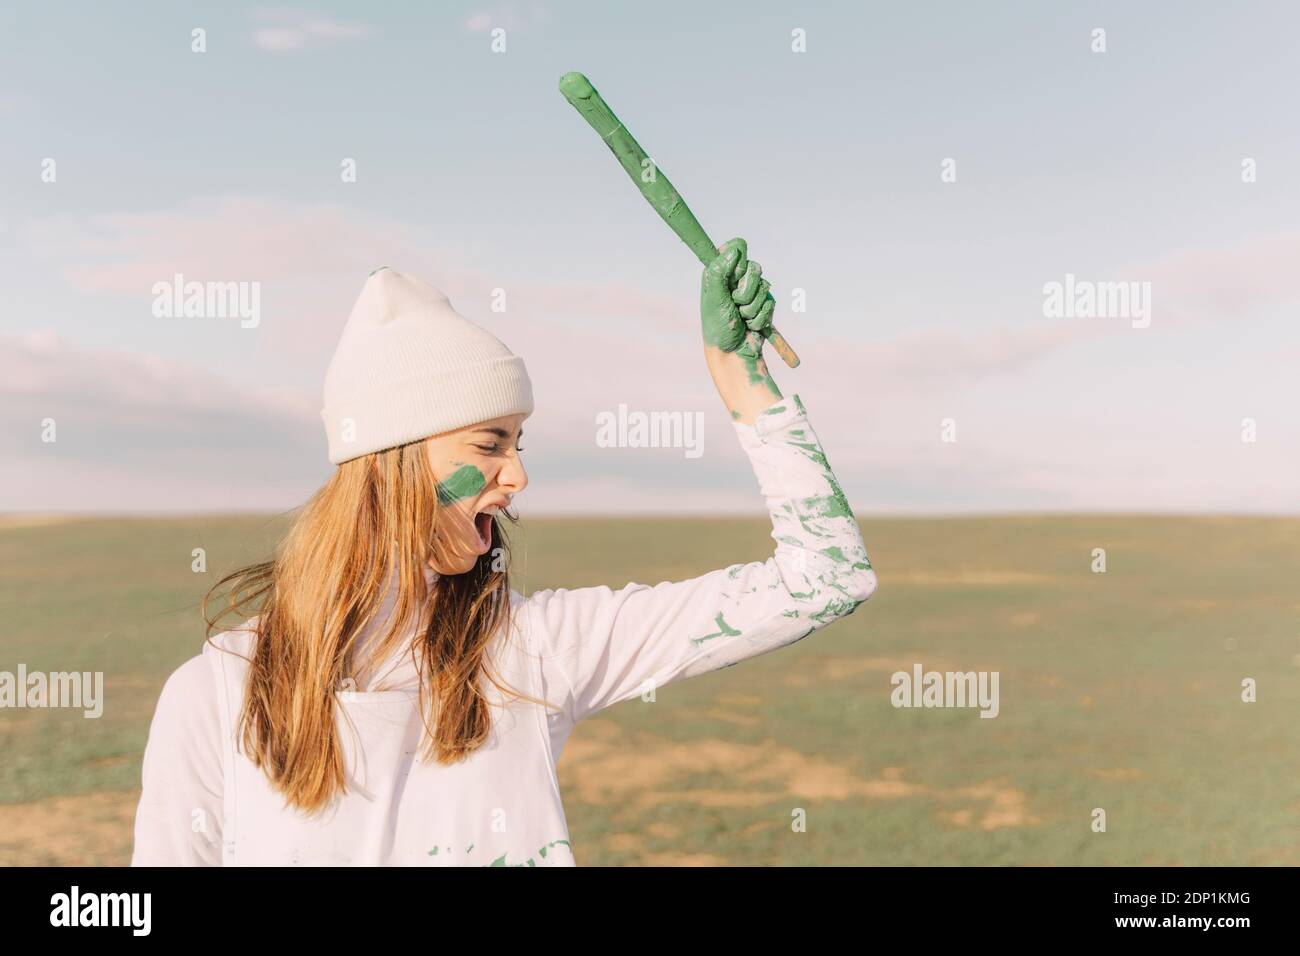 Femme hurlant tenant un bâton peint vert Banque D'Images